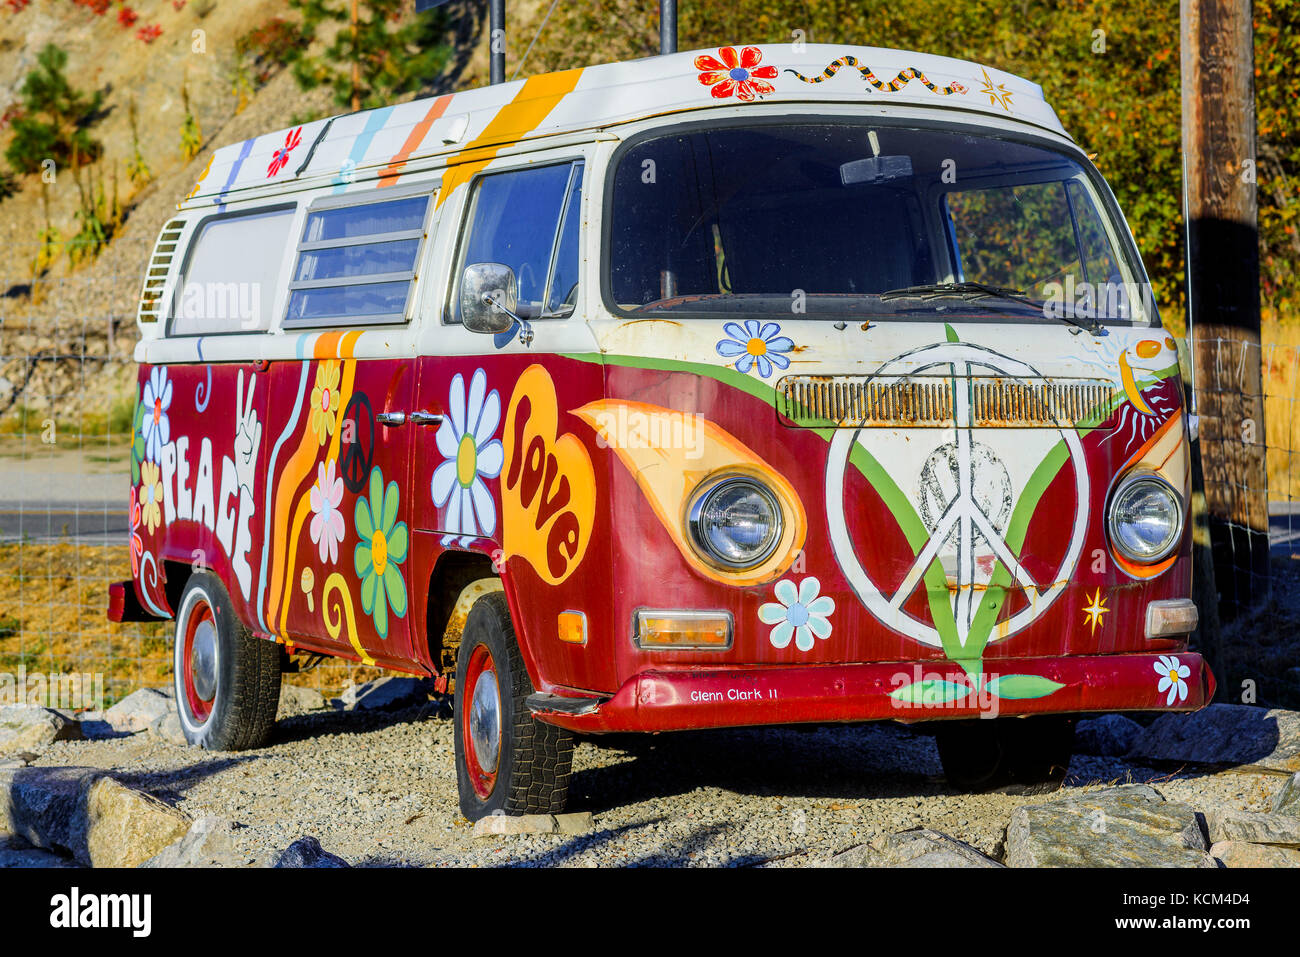 Frieden Liebe gemalt Hippie van Stockfotografie - Alamy